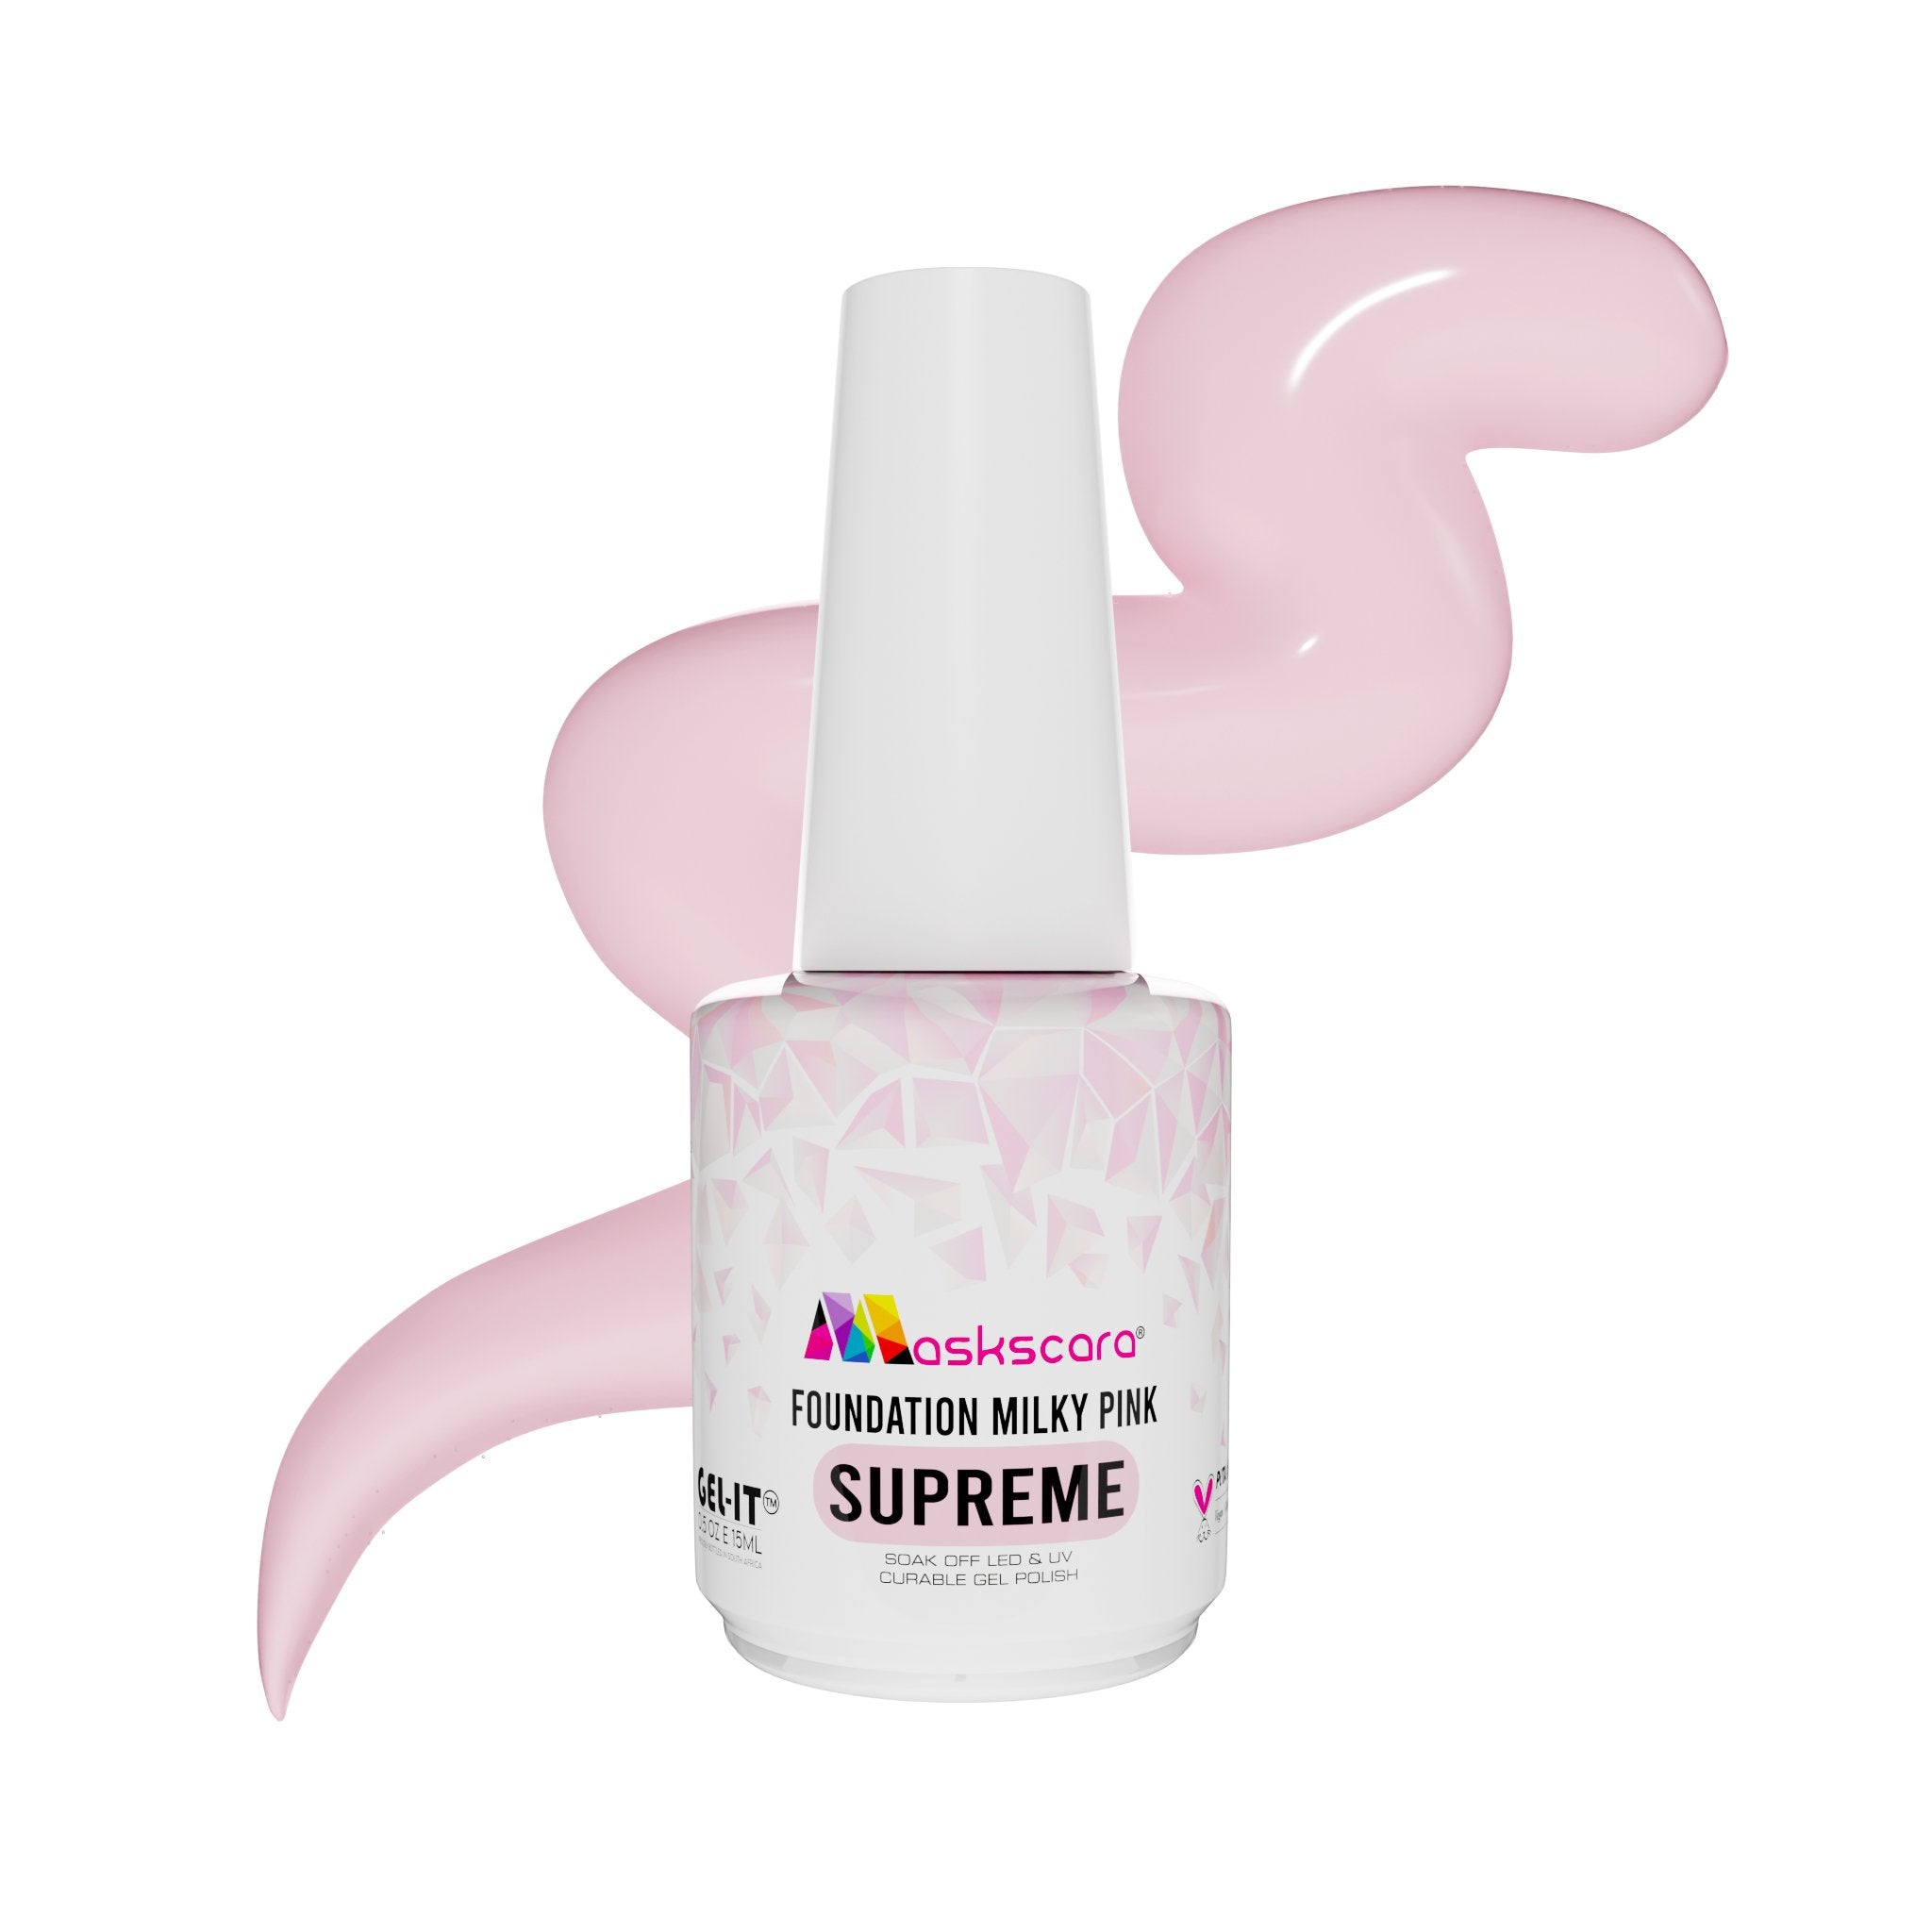 <img scr = “Maskscara Supreme Nail Foundation - Milky Pink.jpg” alt = “Milky Pink Supreme Foundation Gel by the brand Maskscara”>